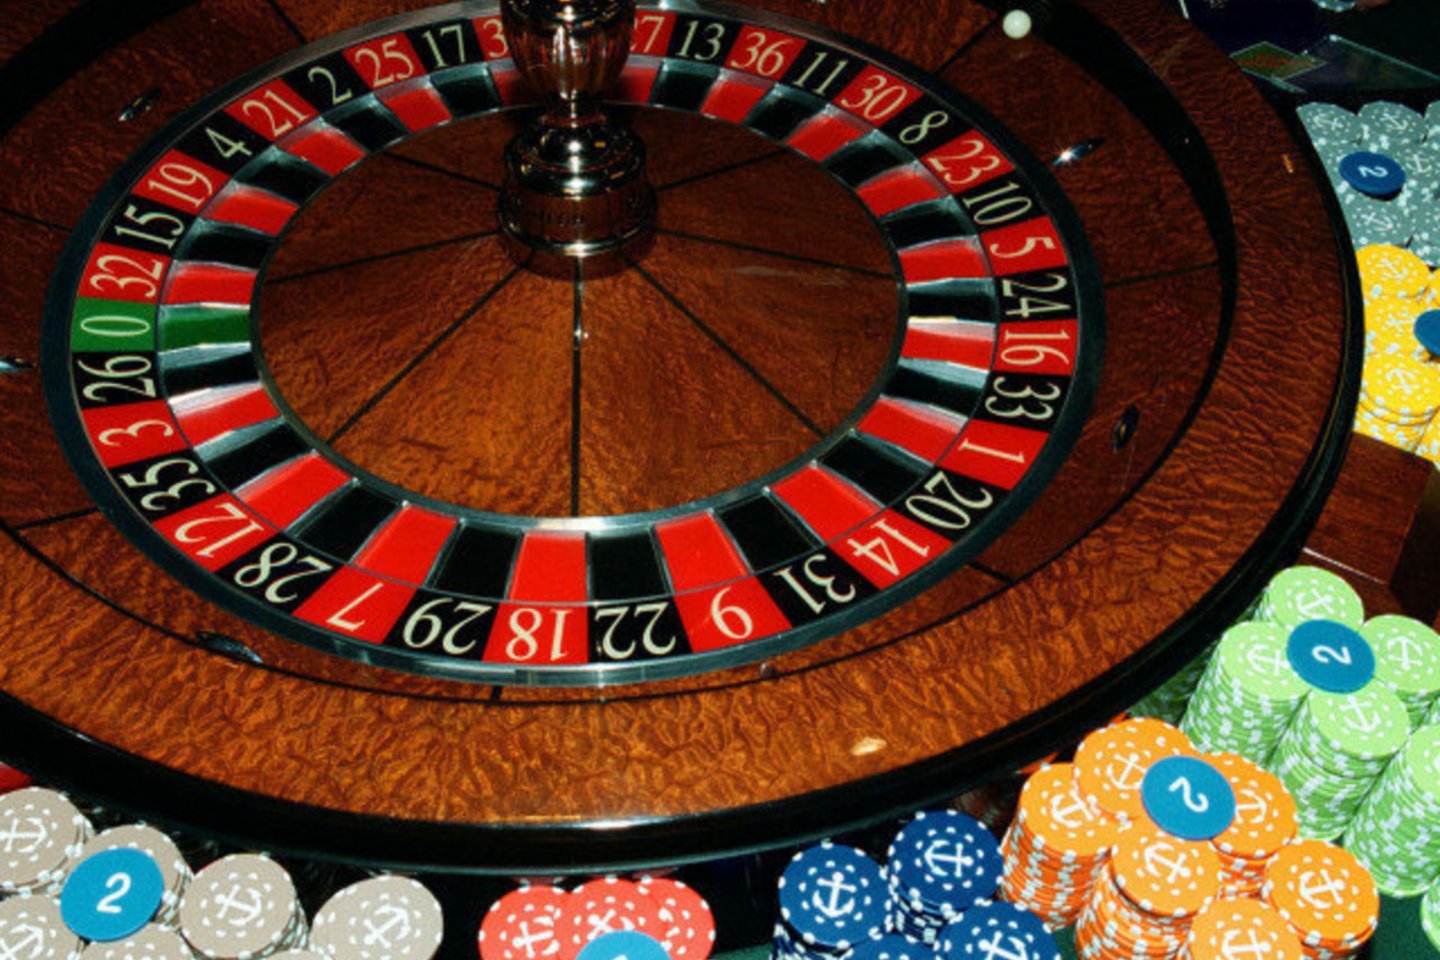 Sveikatos apsaugos ministerija (SAM) nustatė sąlygas, kurias įvykdžius galės veikti lošimo namai (kazino) ir lošimo automatų salonai.<br>M.Vidzbelis